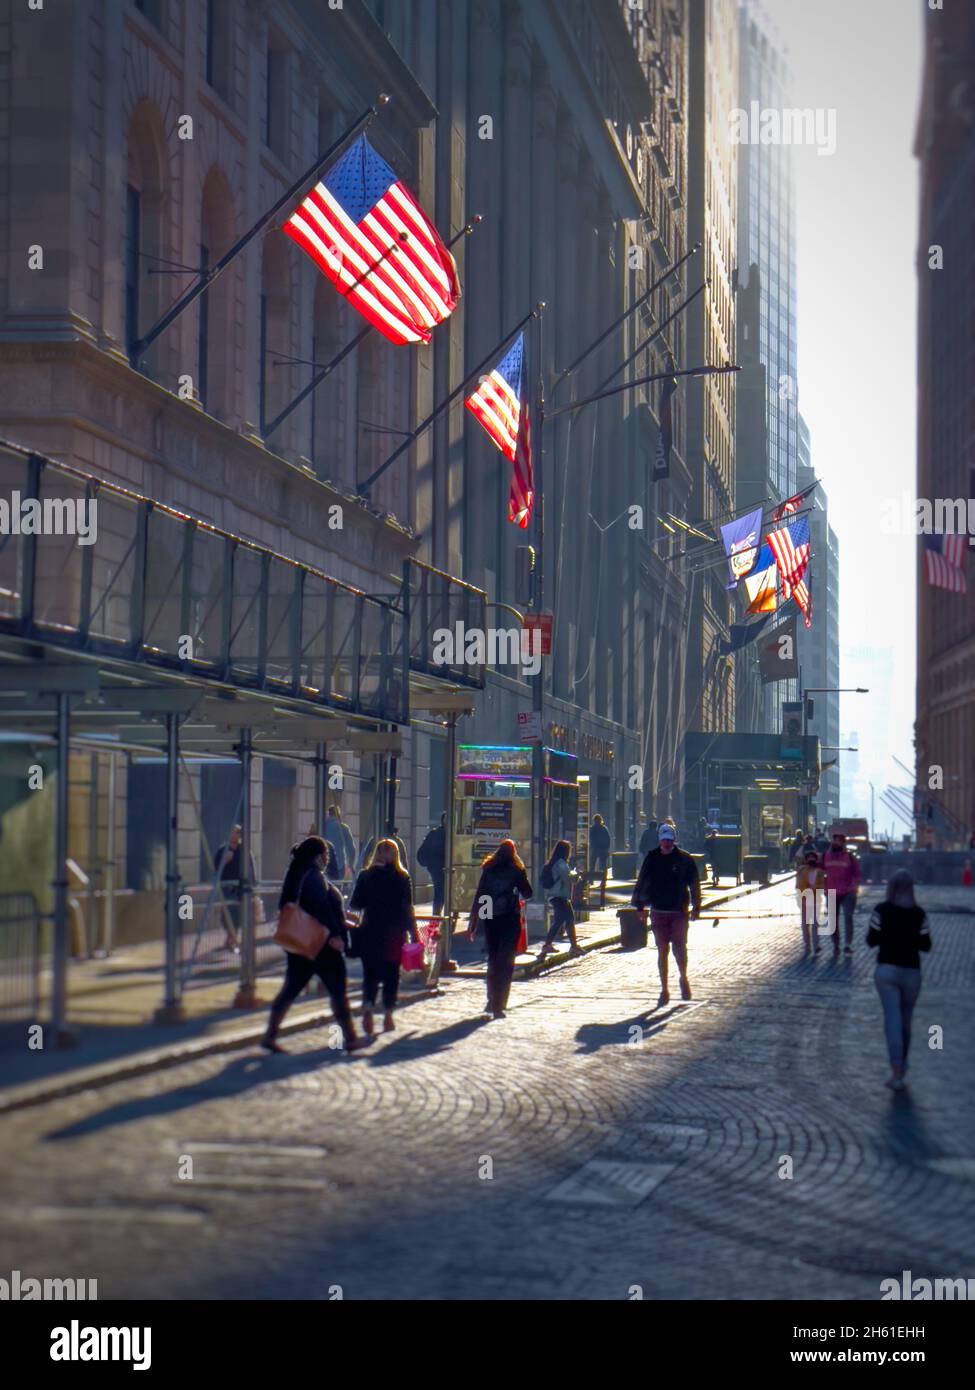 Silouette von Menschen in einer Kopfsteinpflasterstraße im unteren Manahattan in der Nähe der New Yorker Börse. Hinterleuchtete amerikanische Flaggen auf den Gebäuden Stockfoto